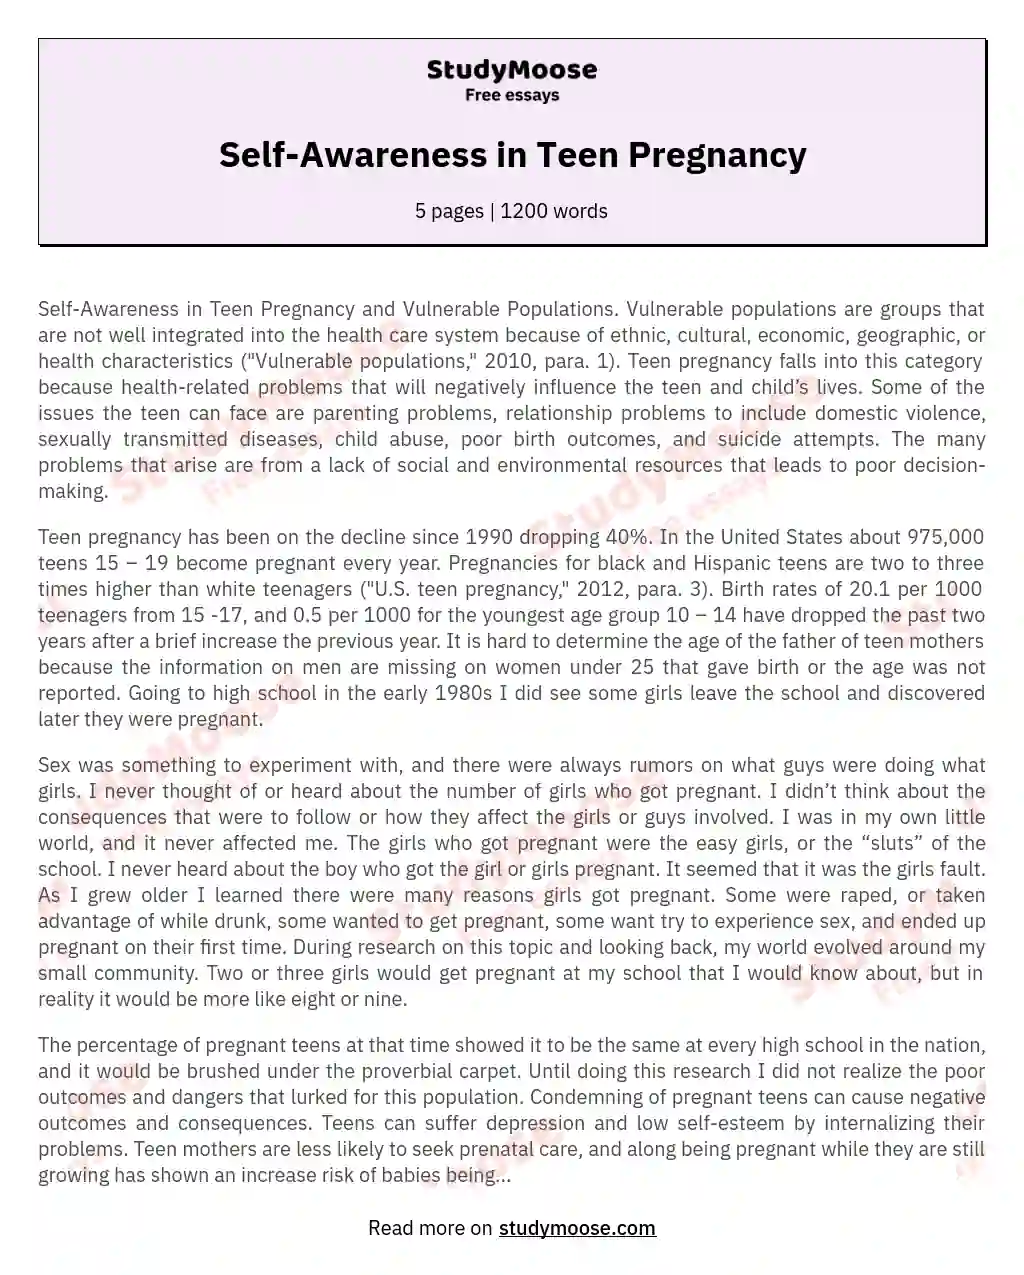 Self-Awareness in Teen Pregnancy essay